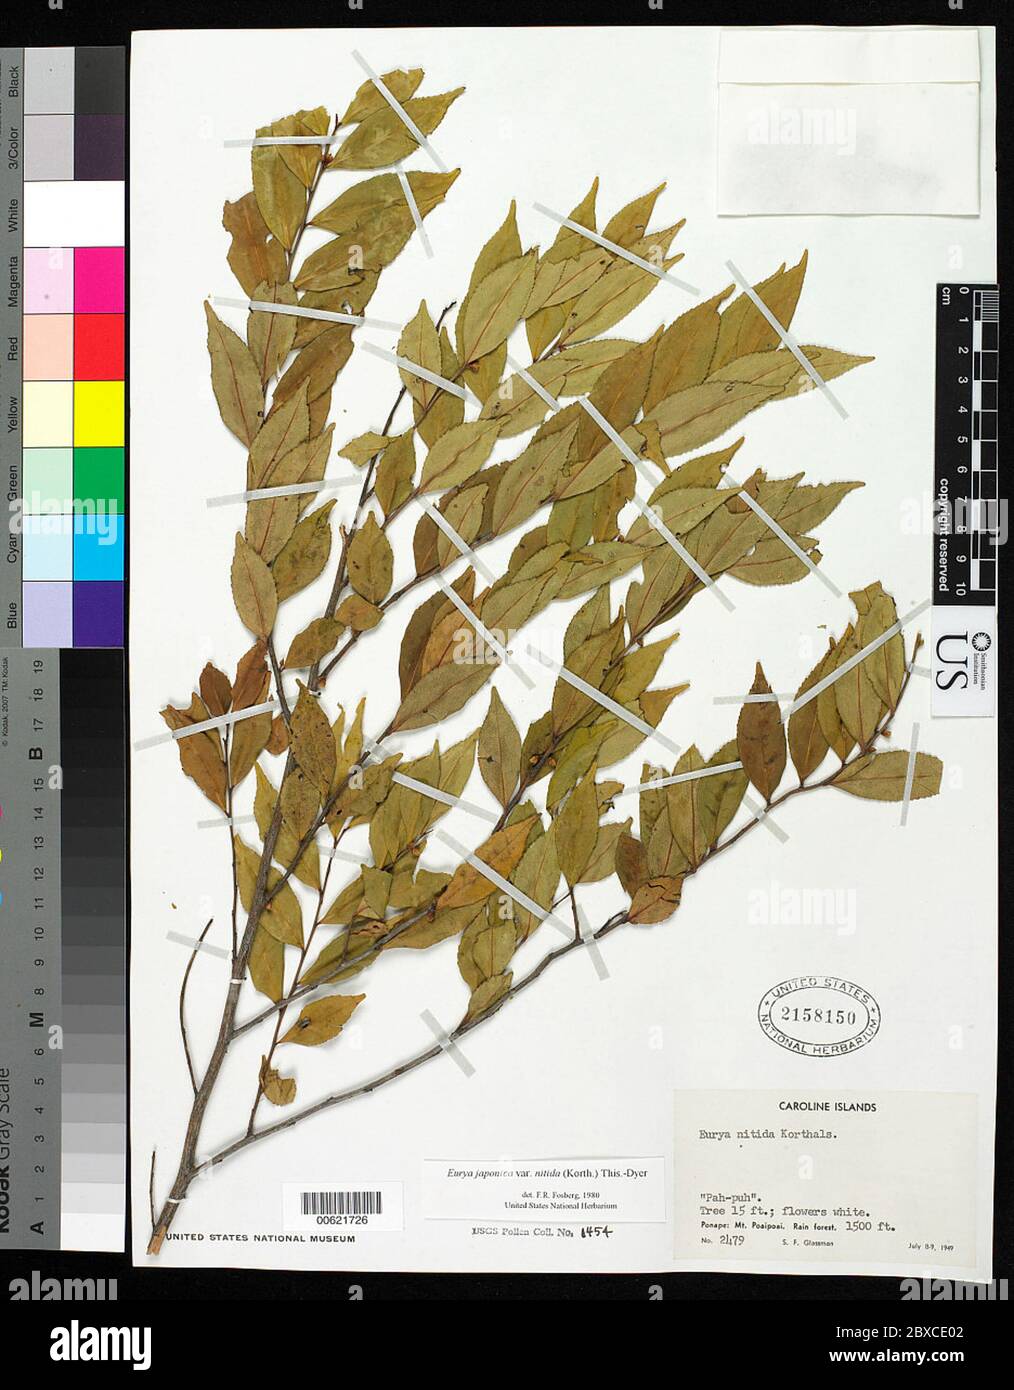 Eurya japonica var nitida Korth Dyer Eurya japonica var nitida Korth Dyer. Stock Photo